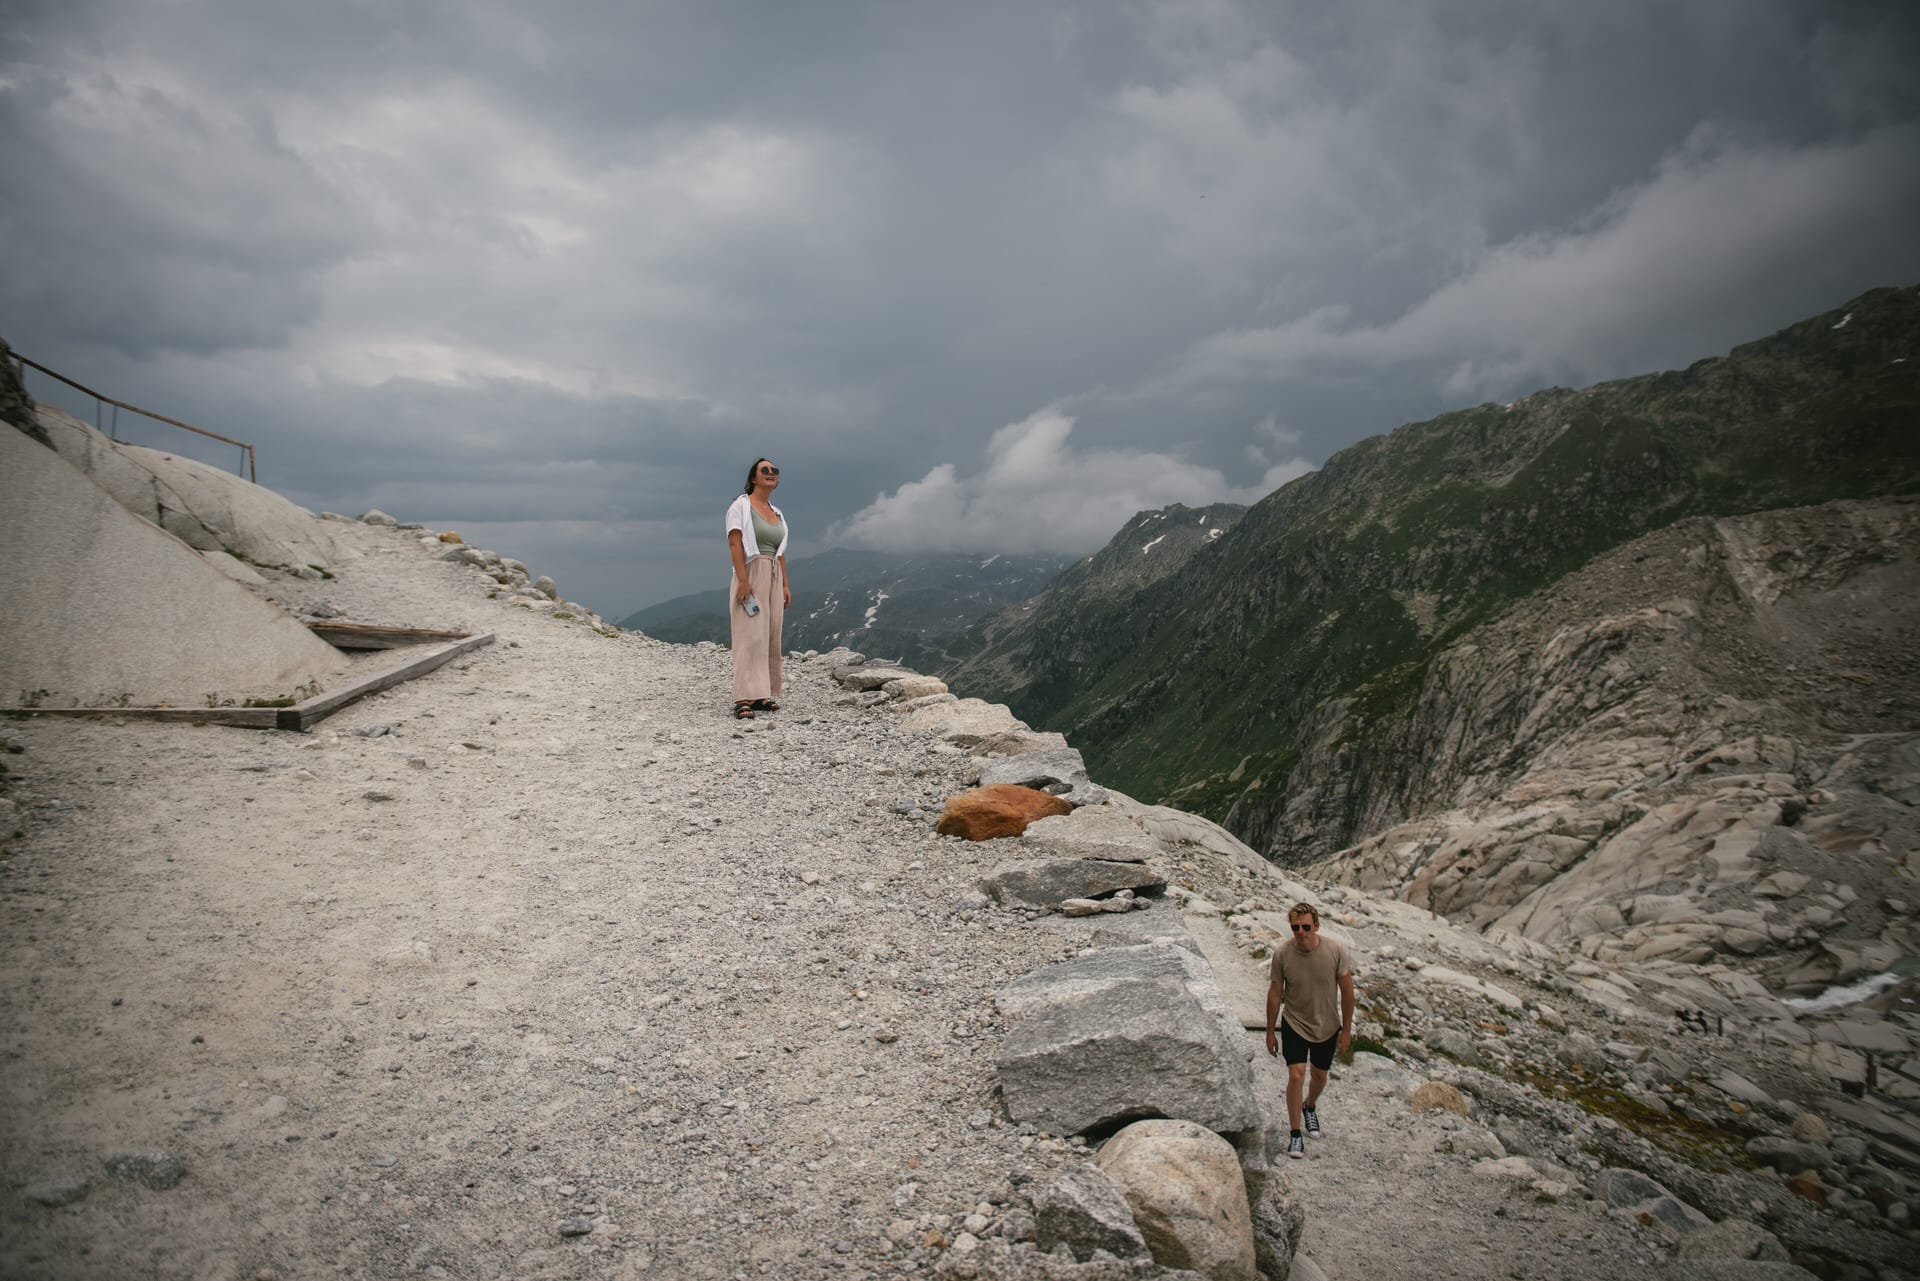 Vows whispered amidst alpine serenity - hiking elopement in Switzerland.